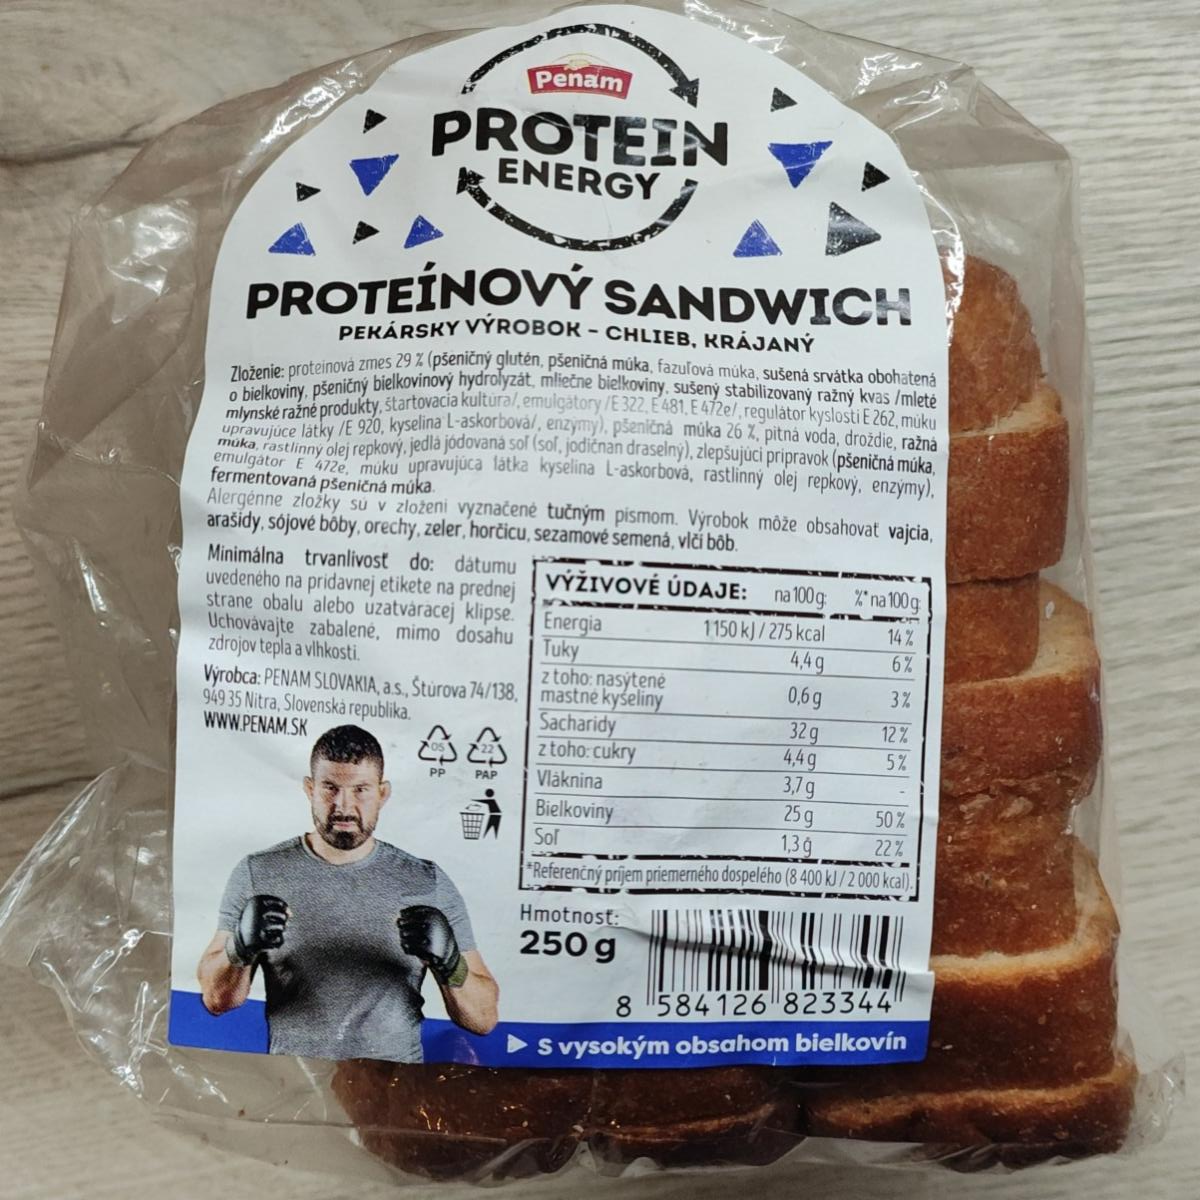 Fotografie - Proteínový Sandwich Protein Energy Penam